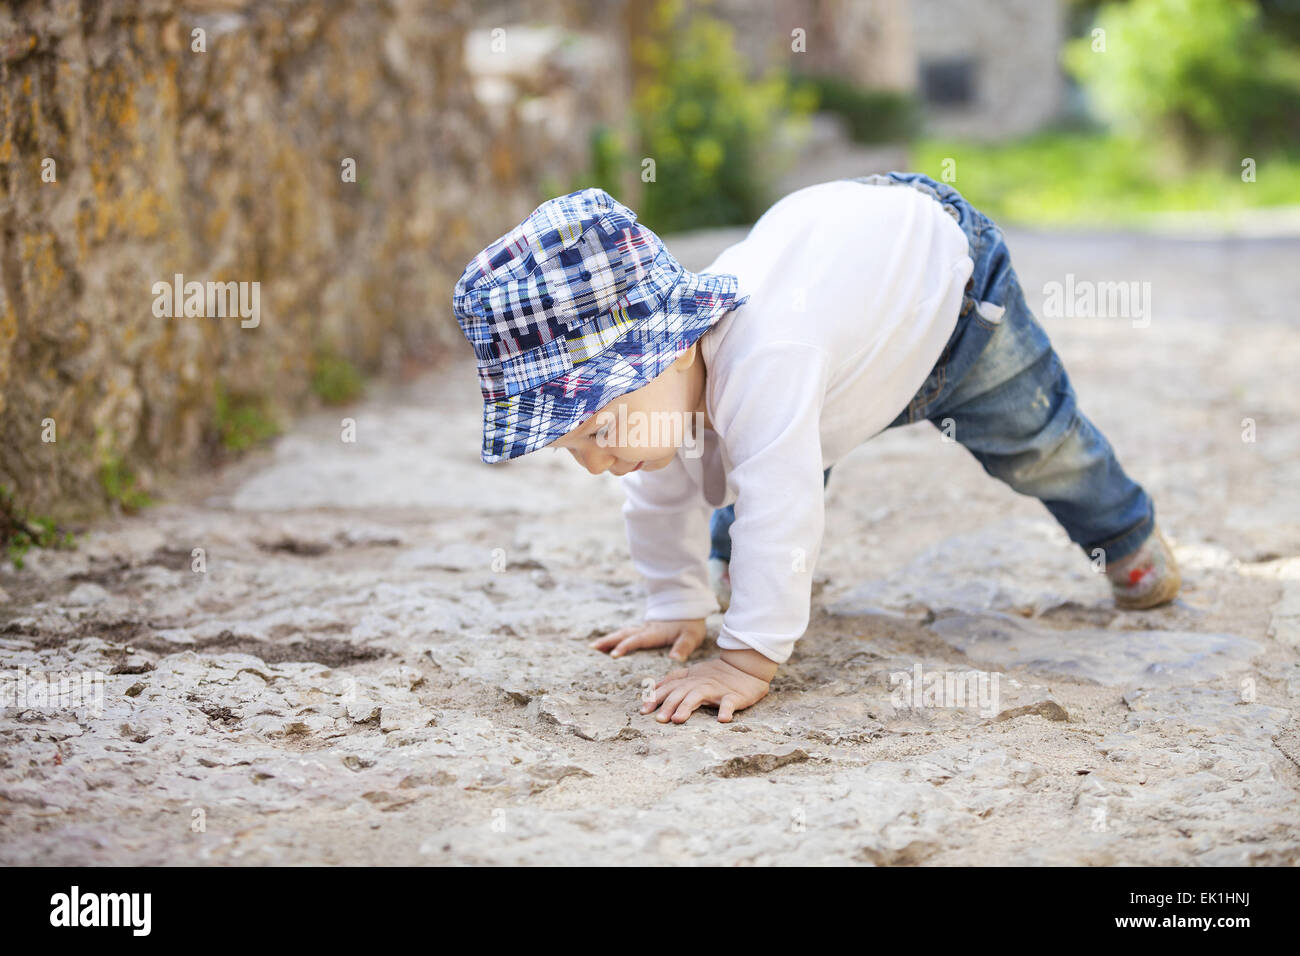 Carino piccolo ragazzo strisciando sul lastricato in pietra marciapiede Foto Stock